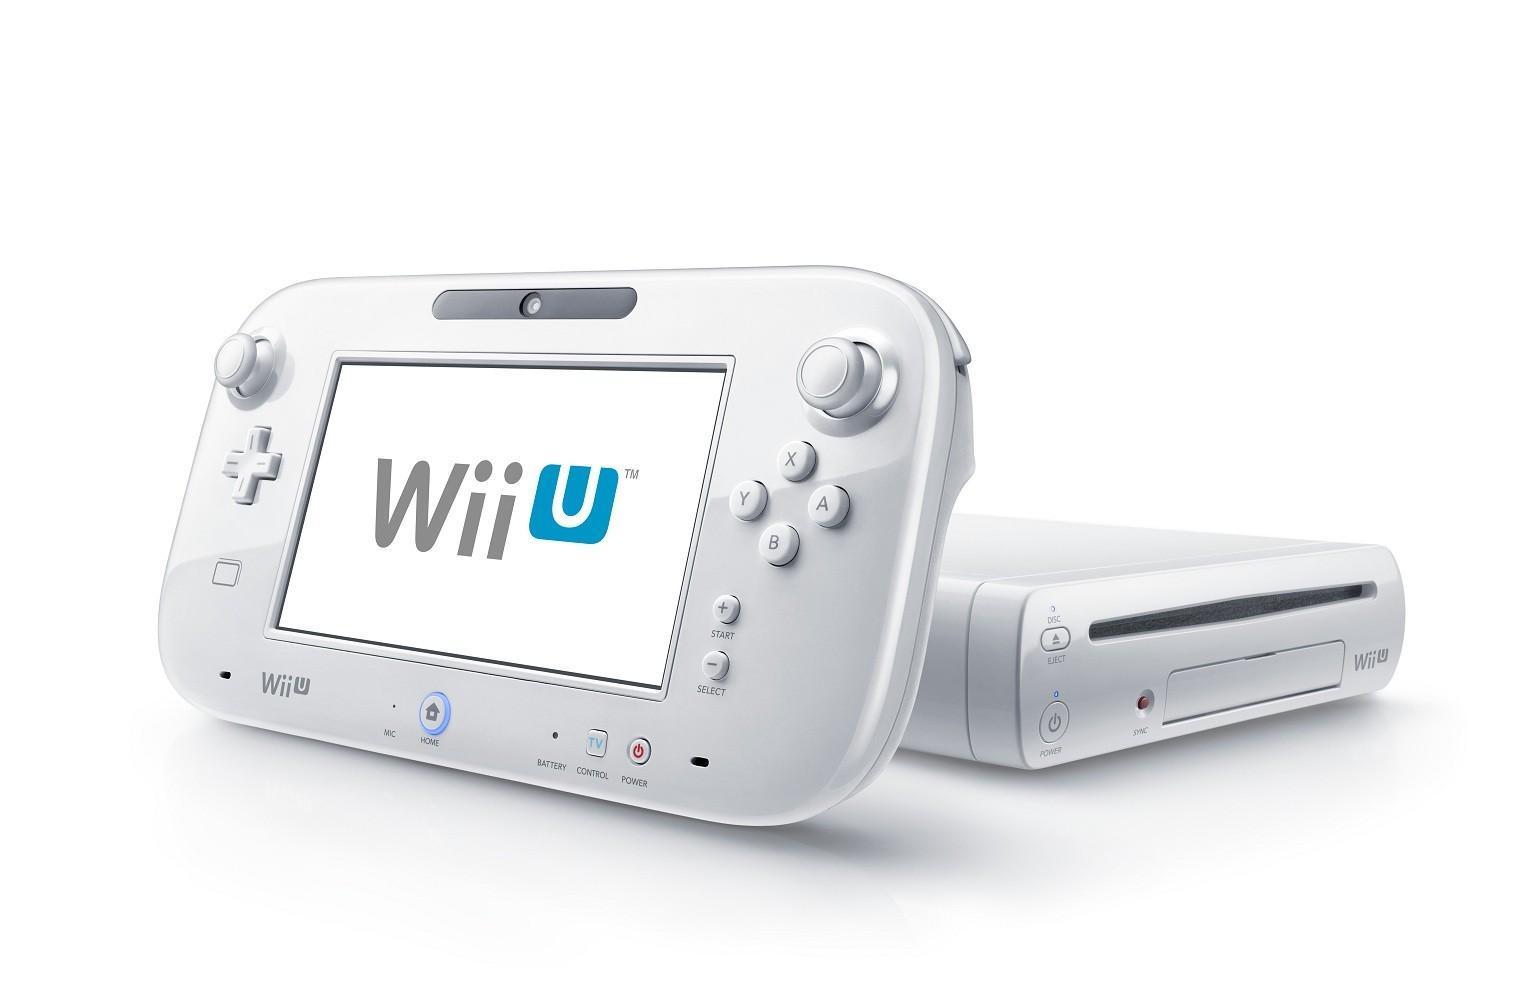  Gamescom    Wii U